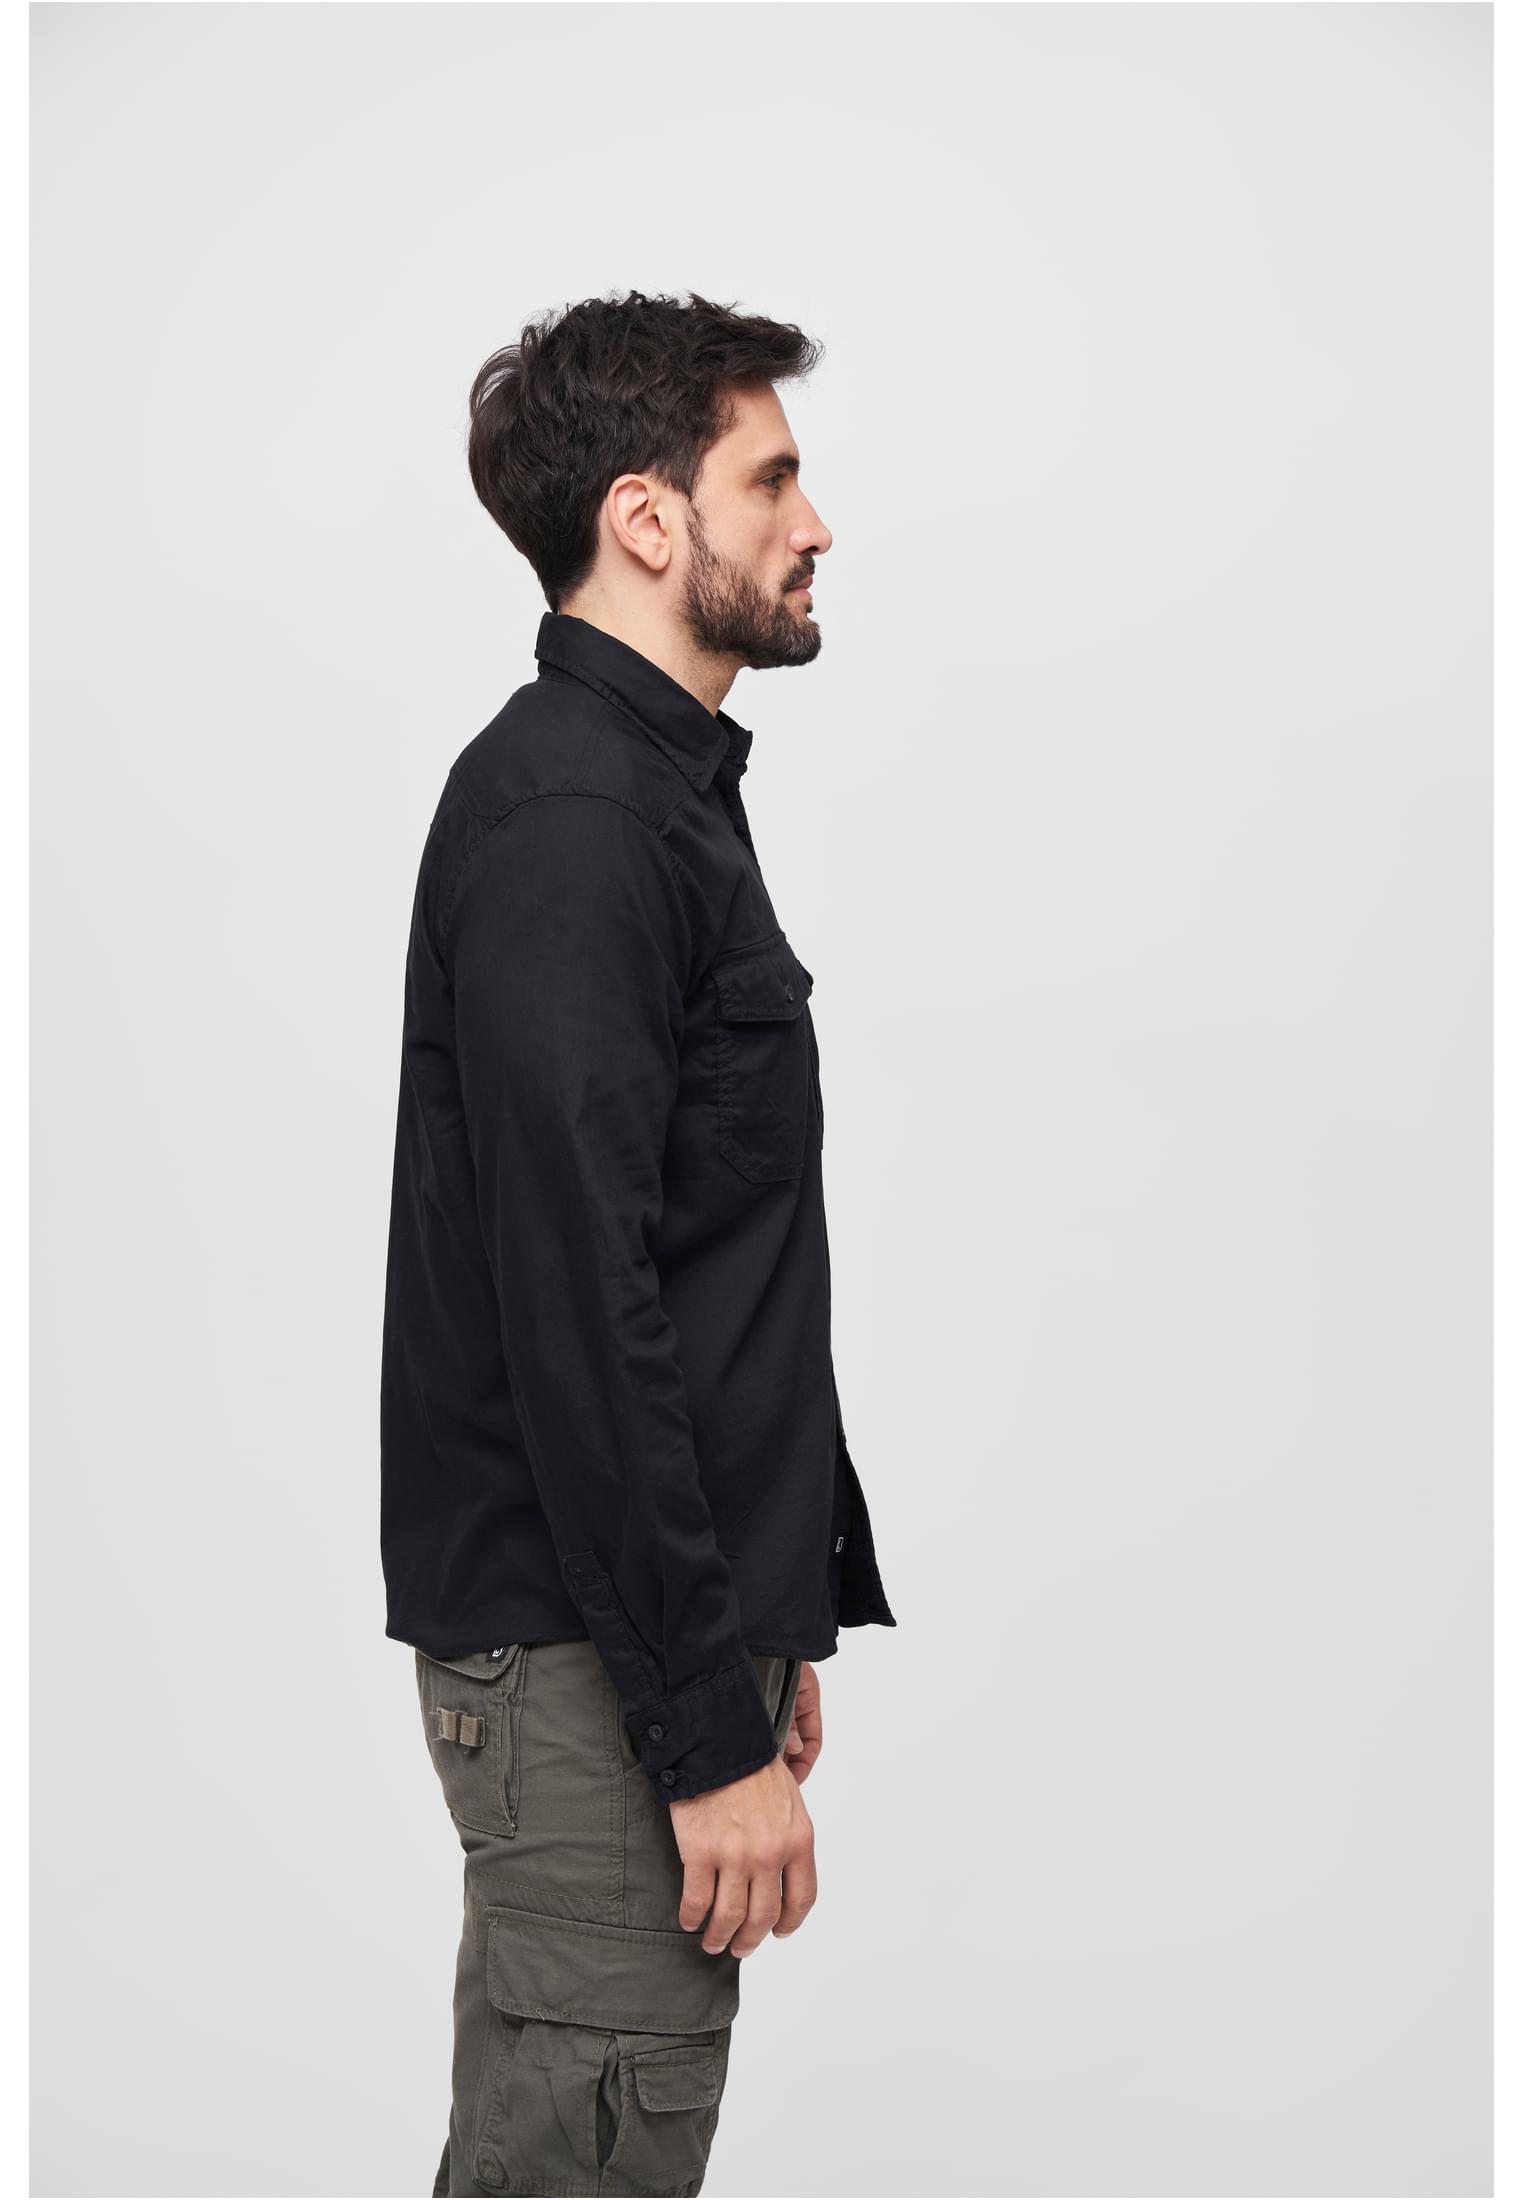 Hemden Flanellshirt in Farbe black